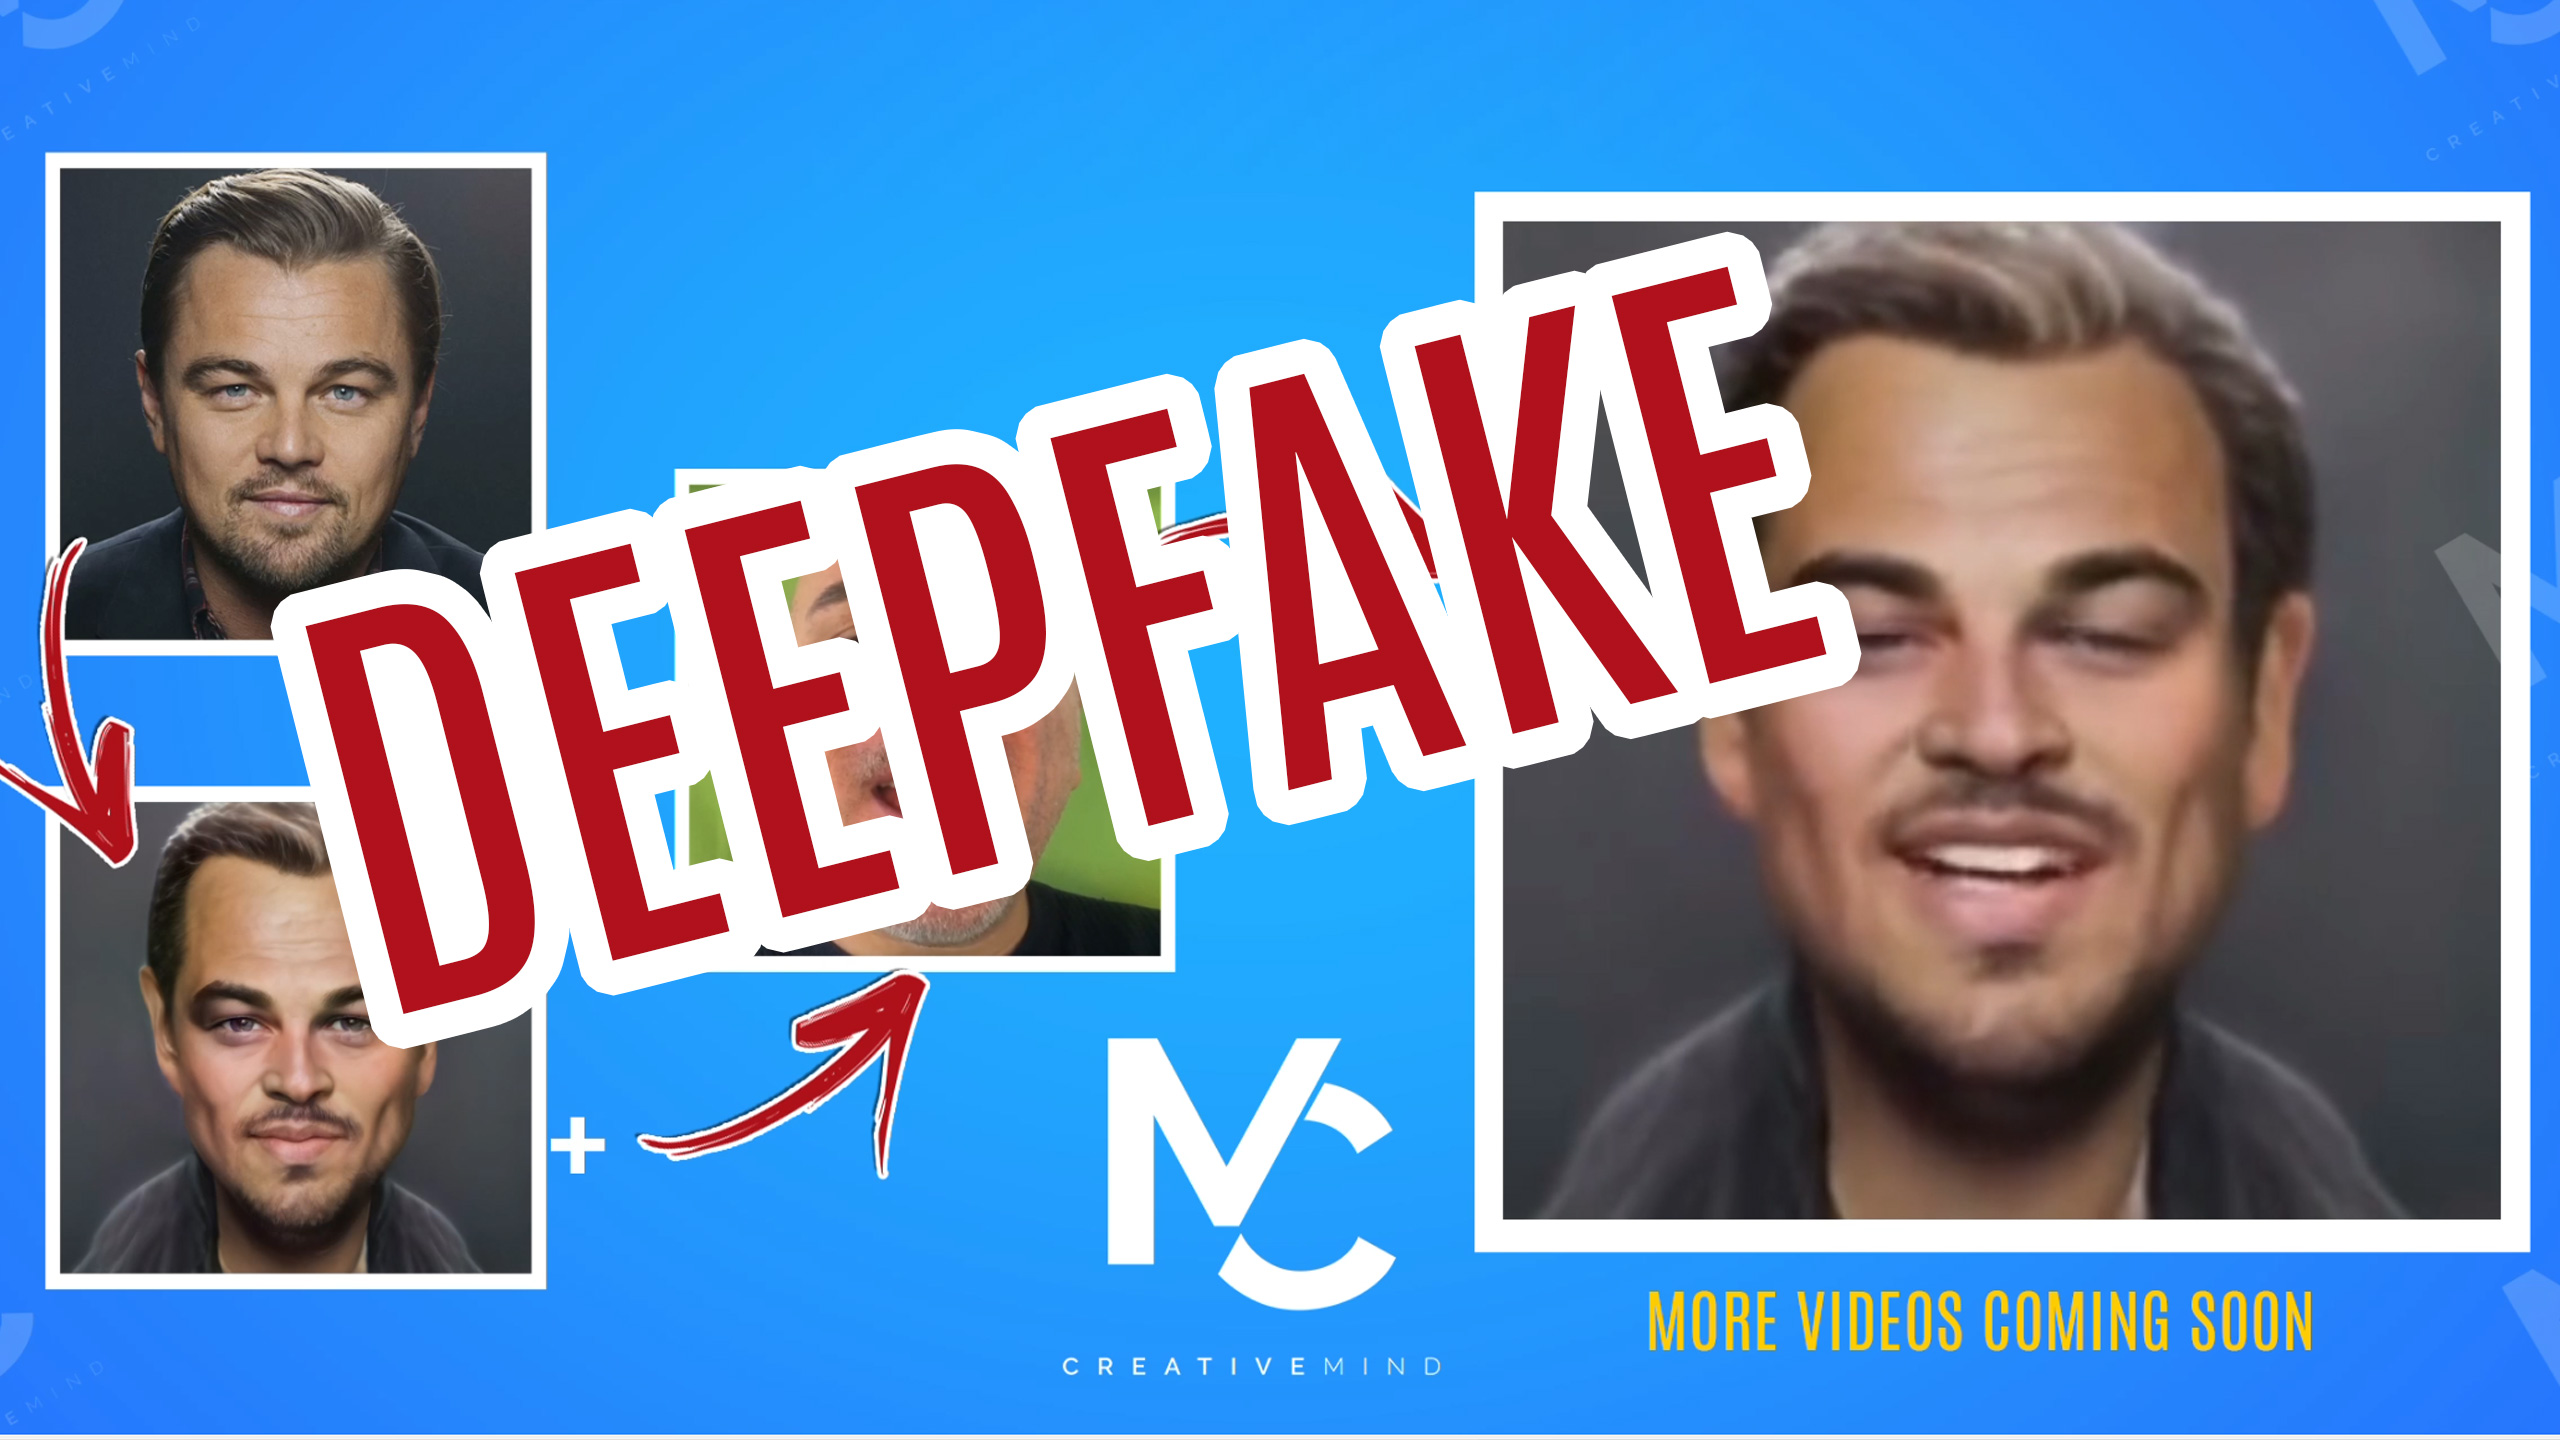 Esempio di deepfake. Dalla foto iniziale di Leonardo DiCaprio alla caricatura  e poi al video finale